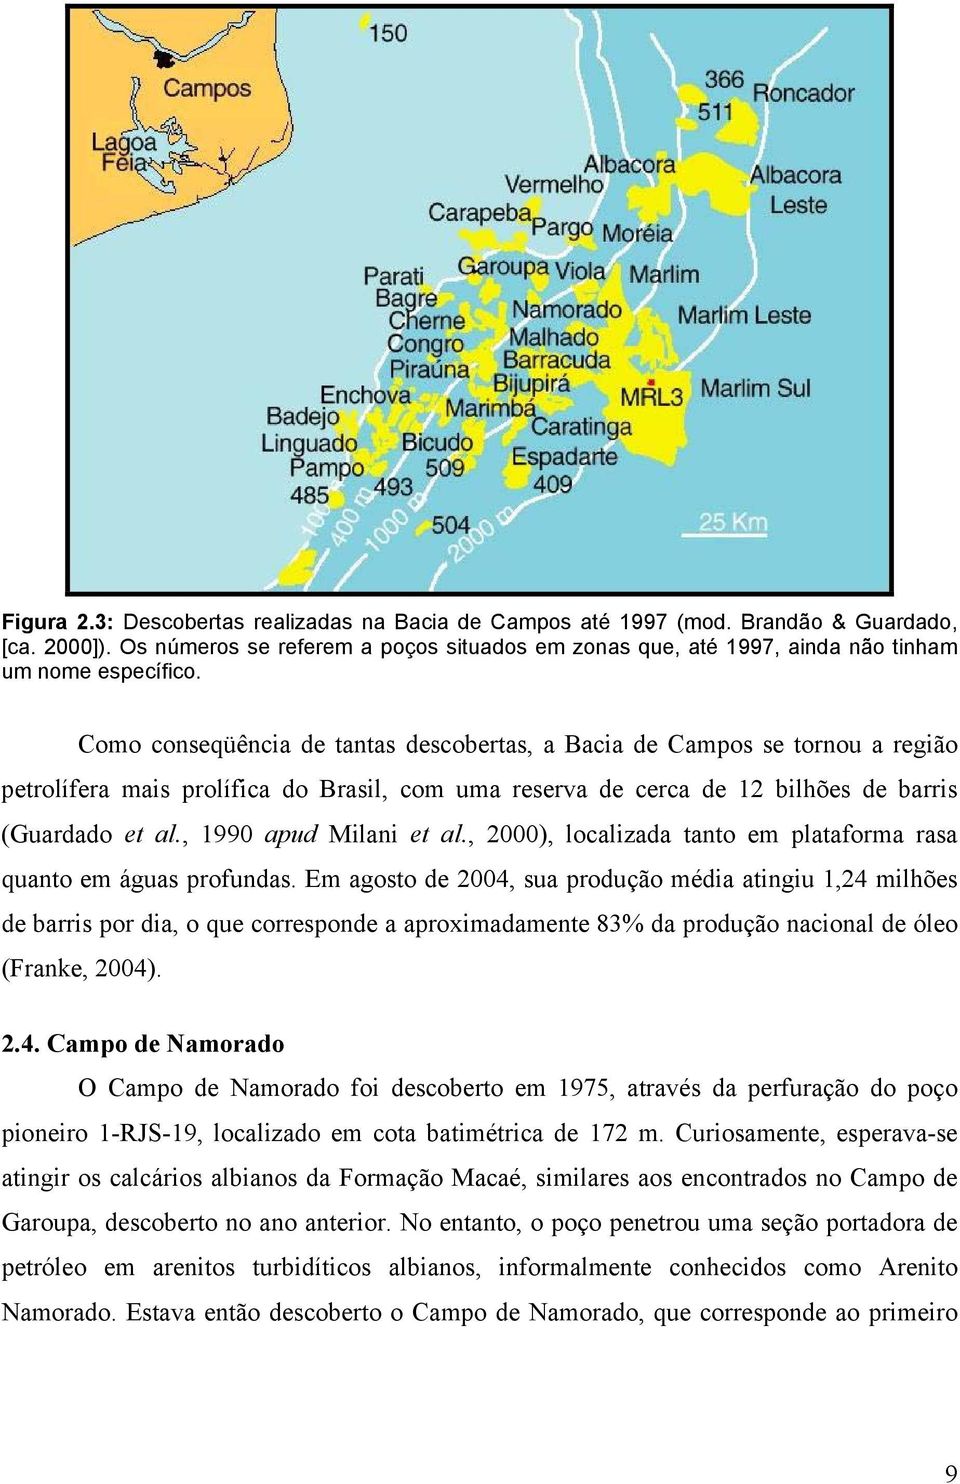 Como conseqüência de tantas descobertas, a Bacia de Campos se tornou a região petrolífera mais prolífica do Brasil, com uma reserva de cerca de 12 bilhões de barris (Guardado et al.